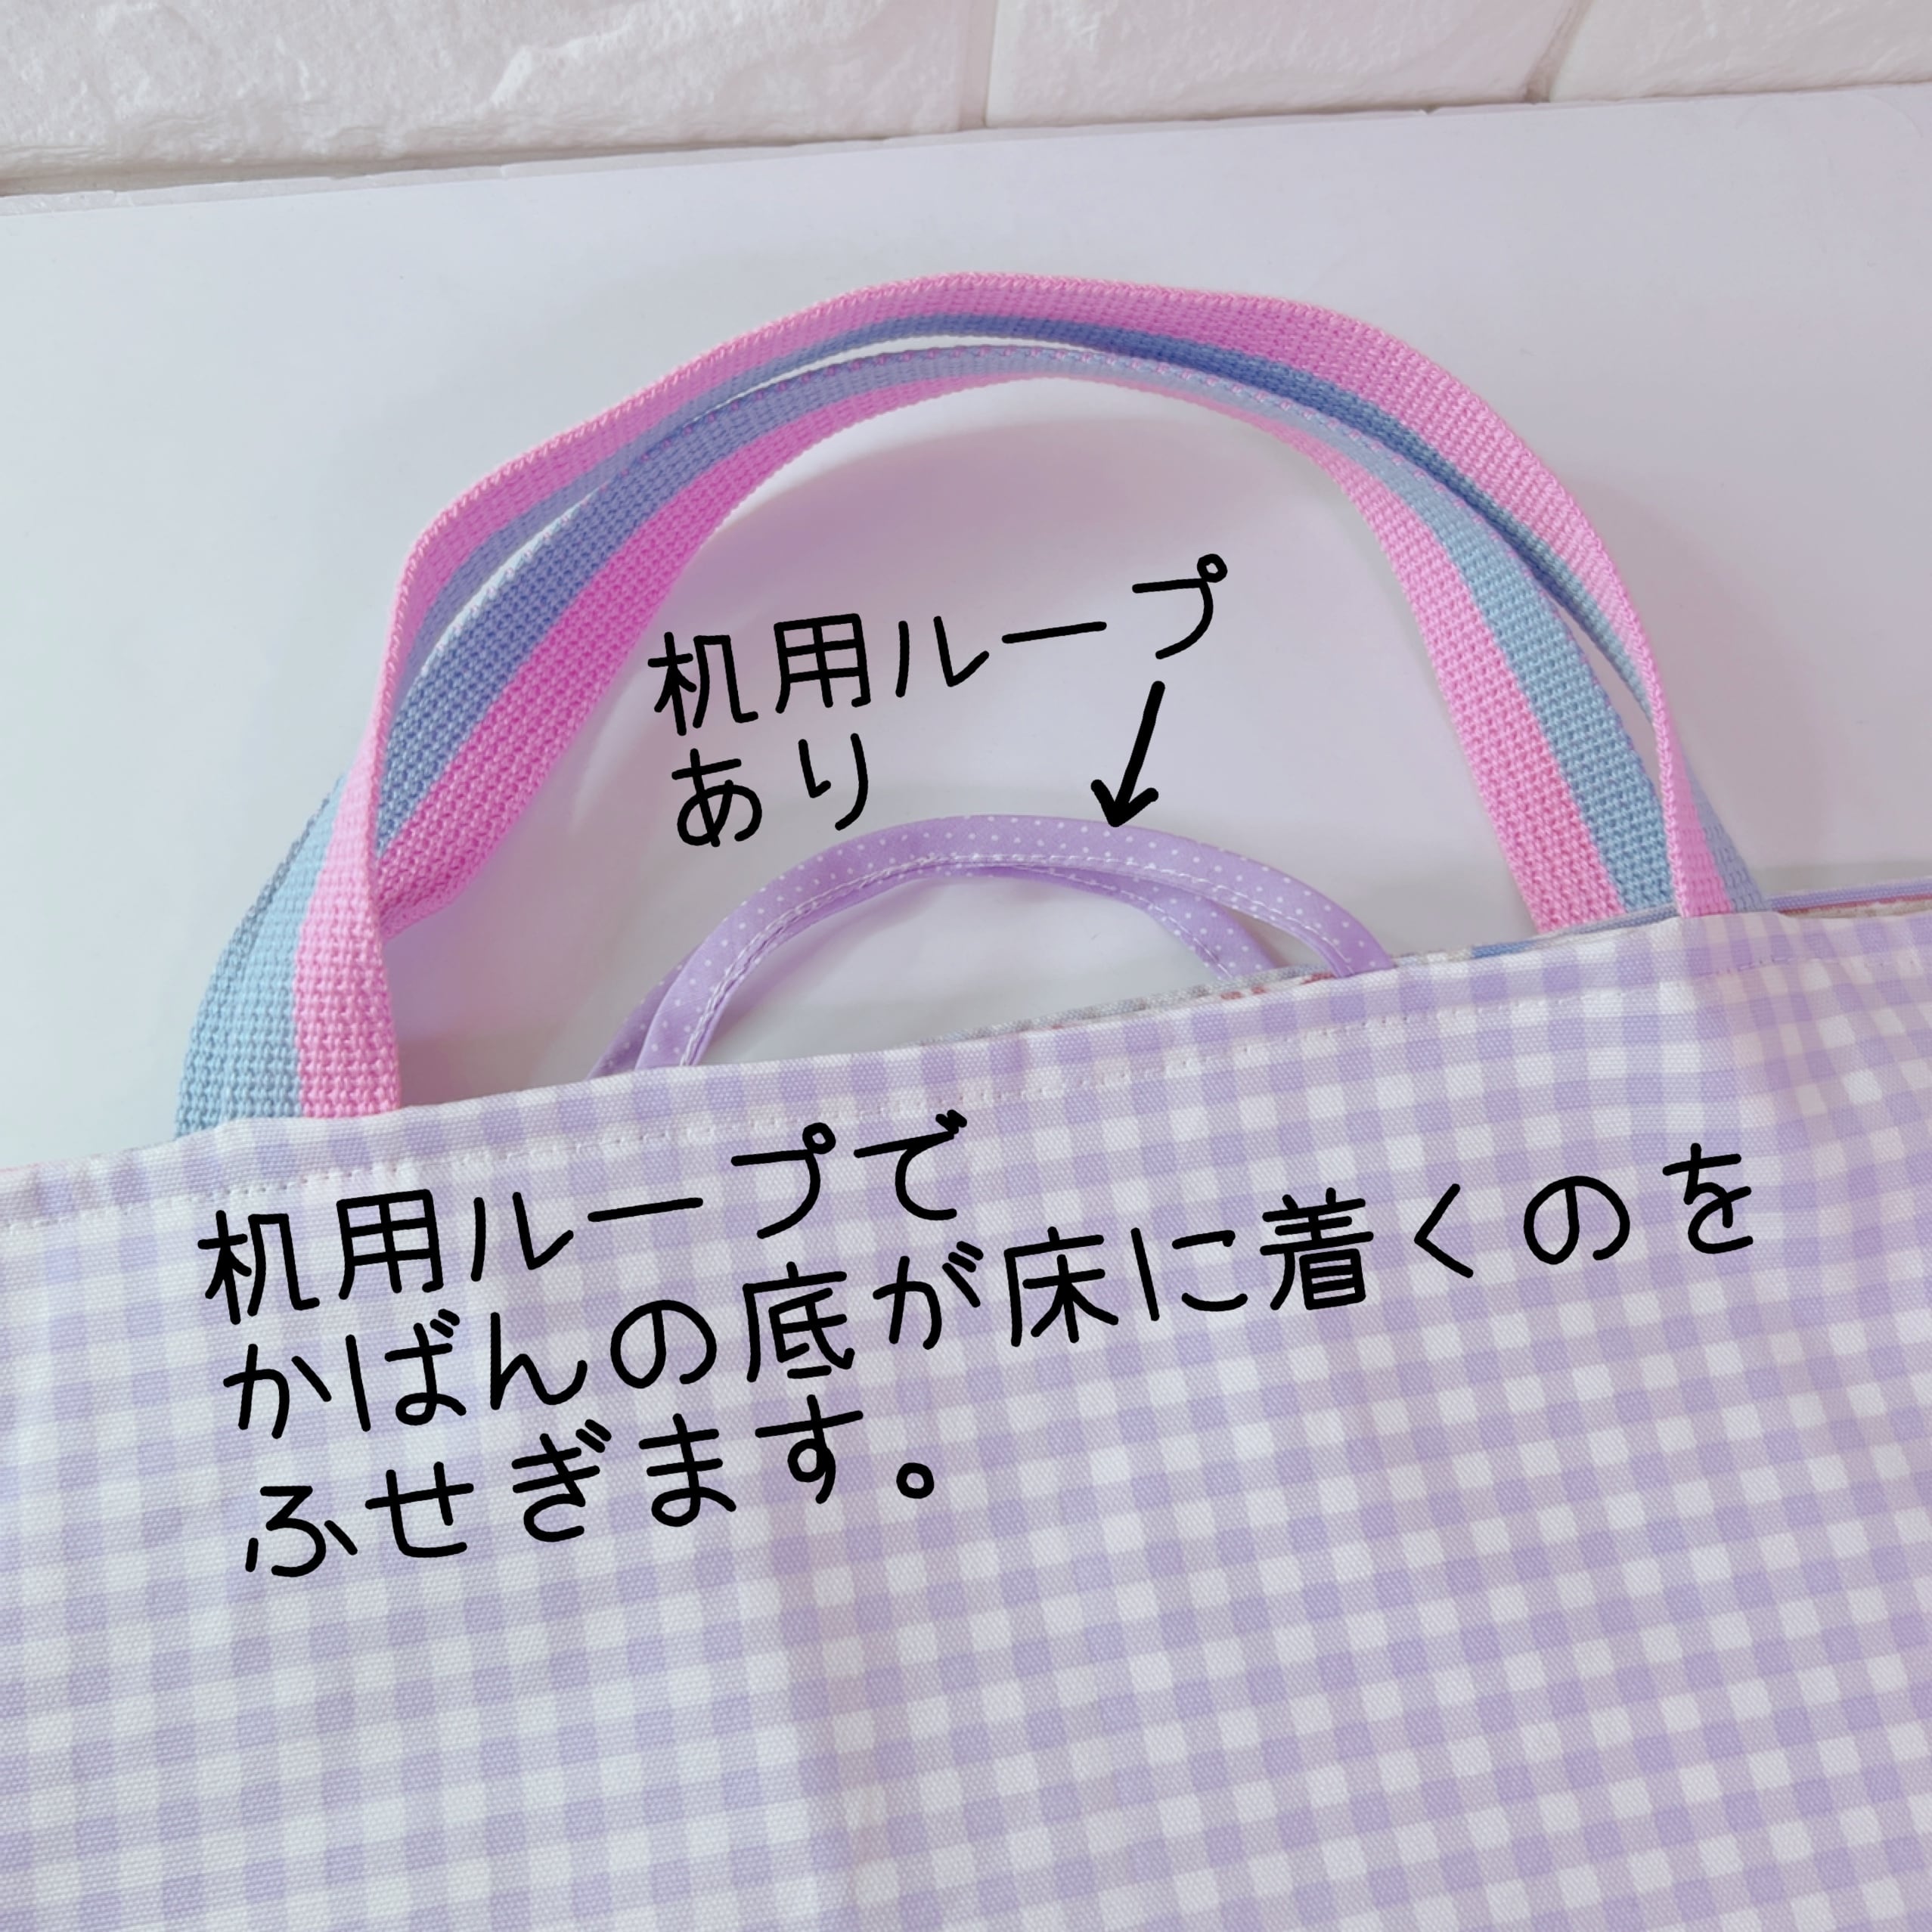 『ユニコーン★虹★ピンク』入園入学☆レッスンバッグ縦長タイプ☆ピンク水玉B